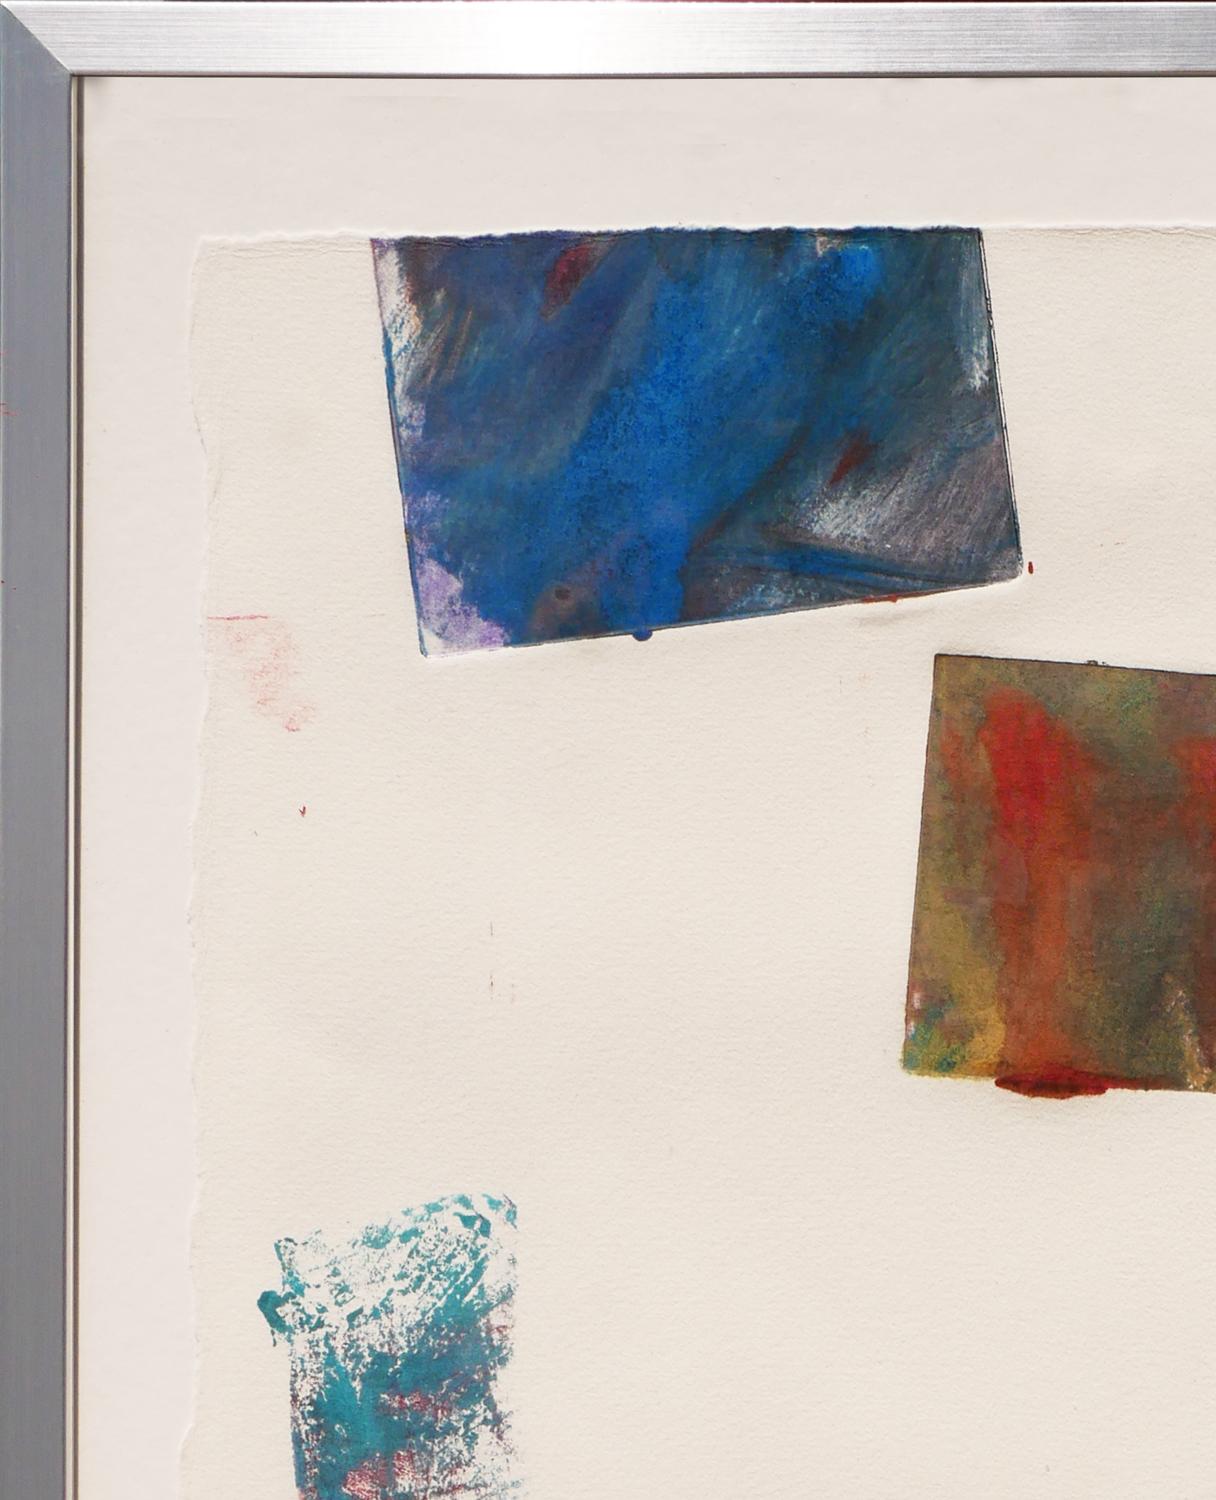 Impression abstraite contemporaine bleue et rouge de l'artiste John Ross Palmer, de Houston, au Texas. Cette impression présente deux formes rectangulaires et un quart d'un autre carré sarcelle délavé en bas sur du papier d'archives. Signé, daté et